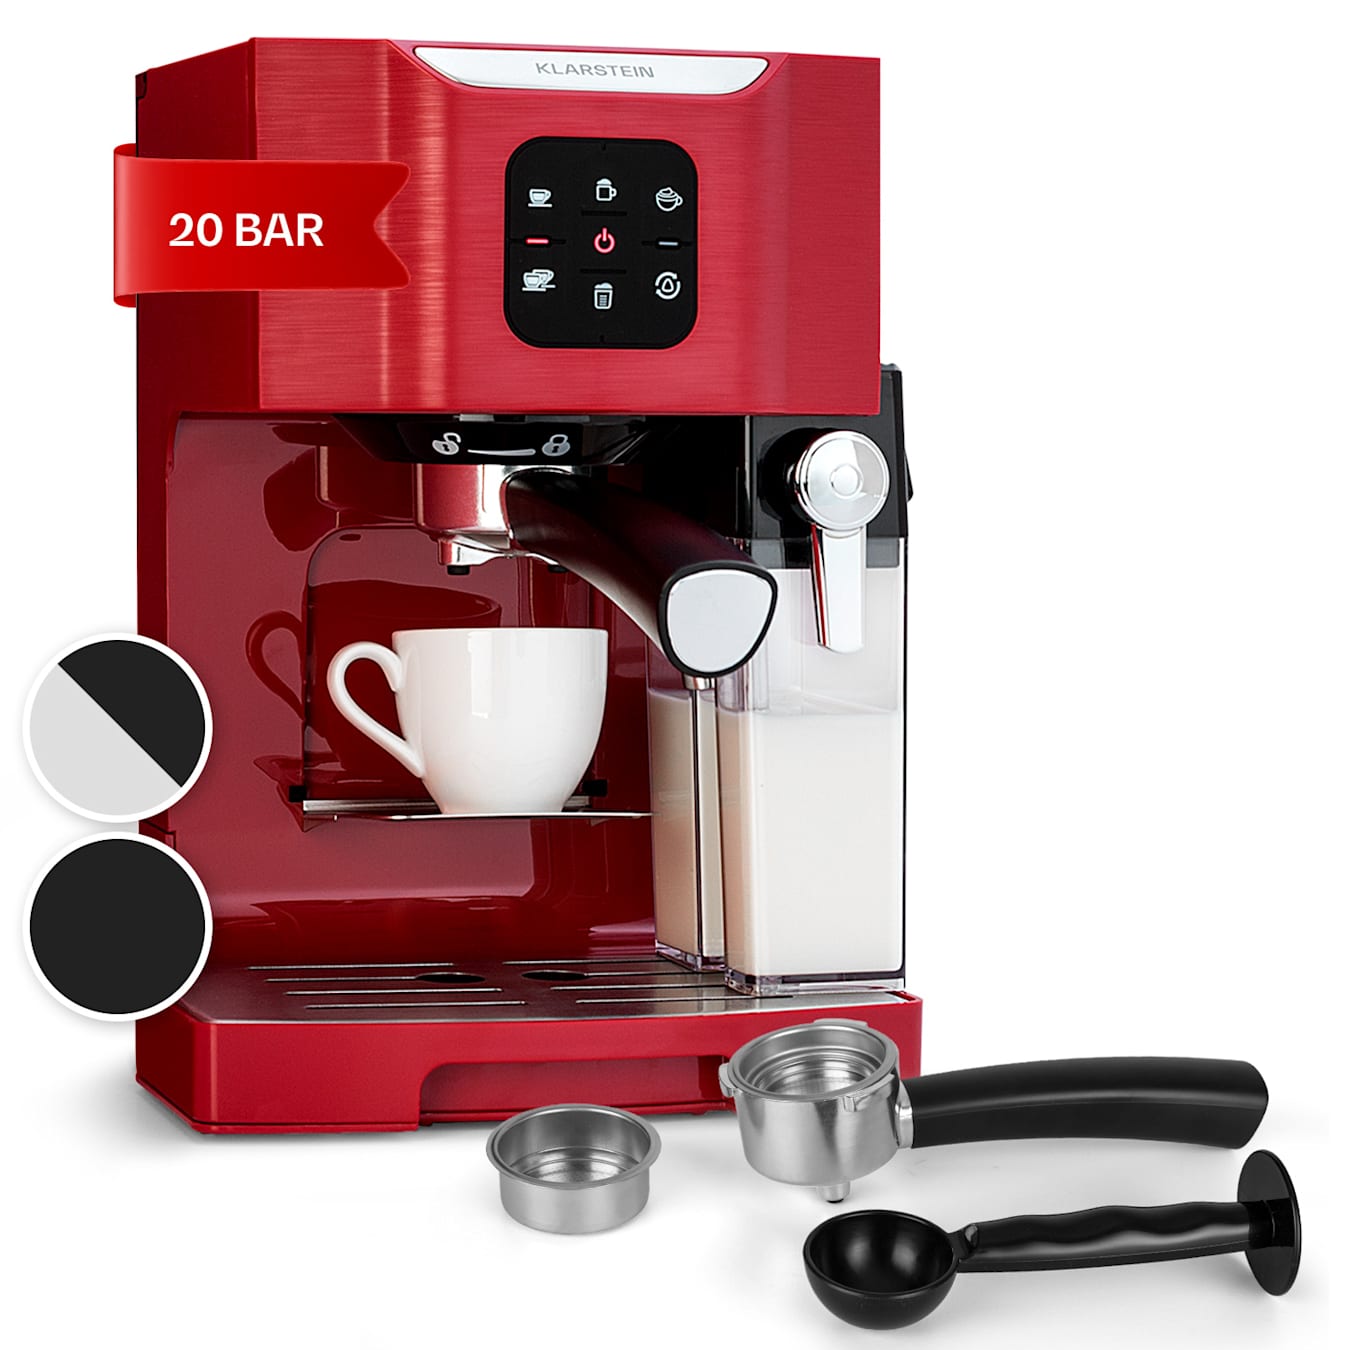 BellaVita coffee machine  3-in-1 function: espresso, cappuccino